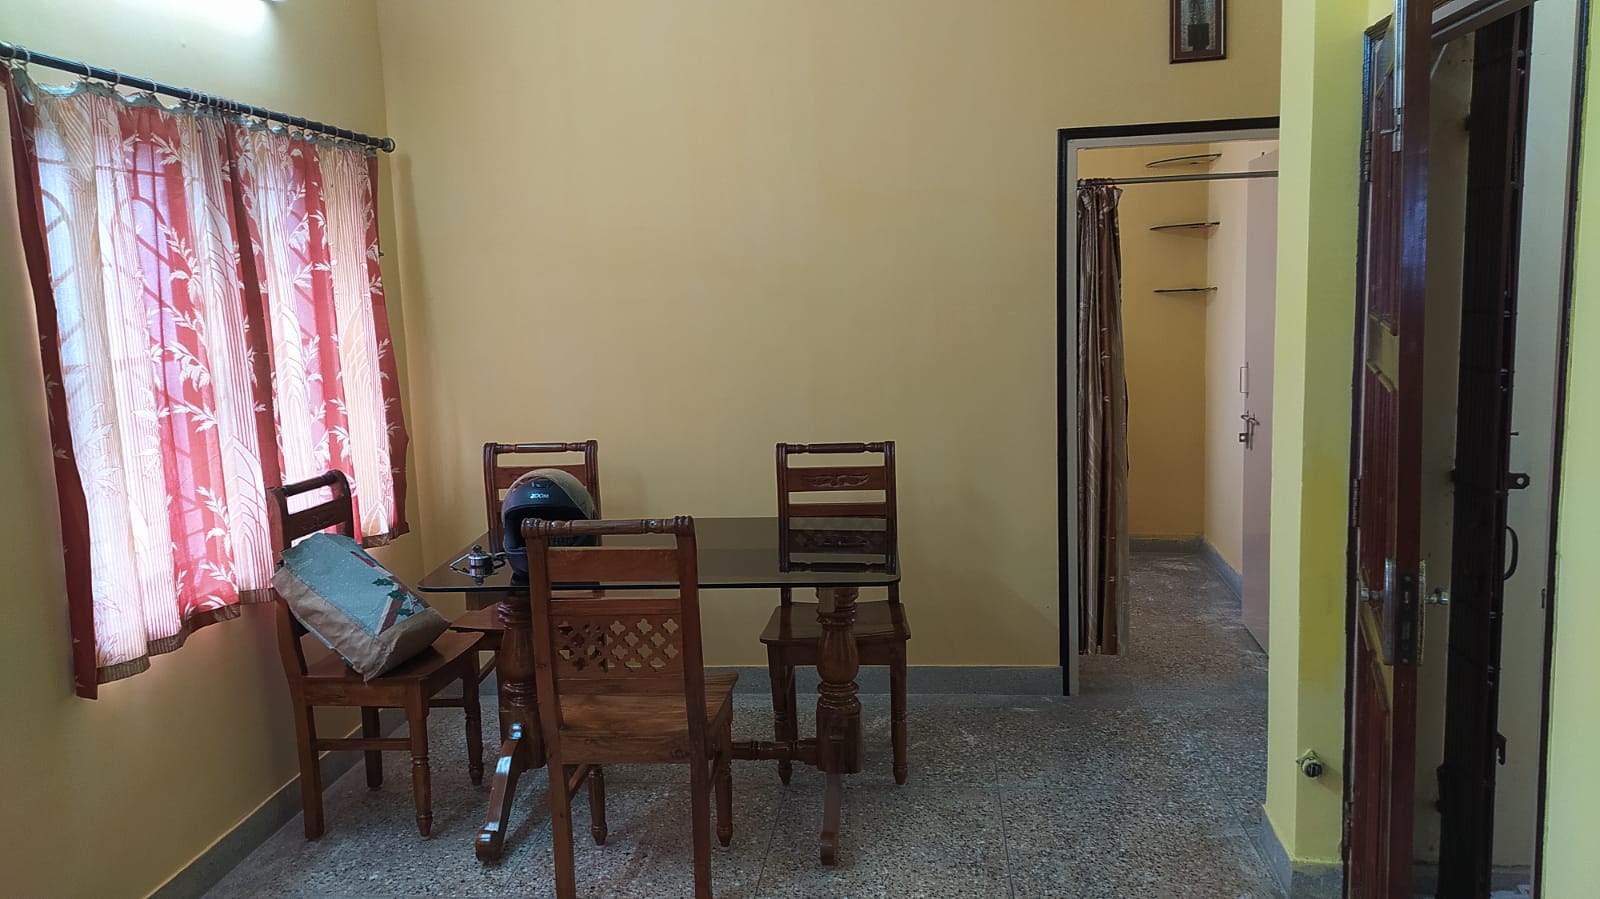 Flat For Rent in Kalikapur Kolkata